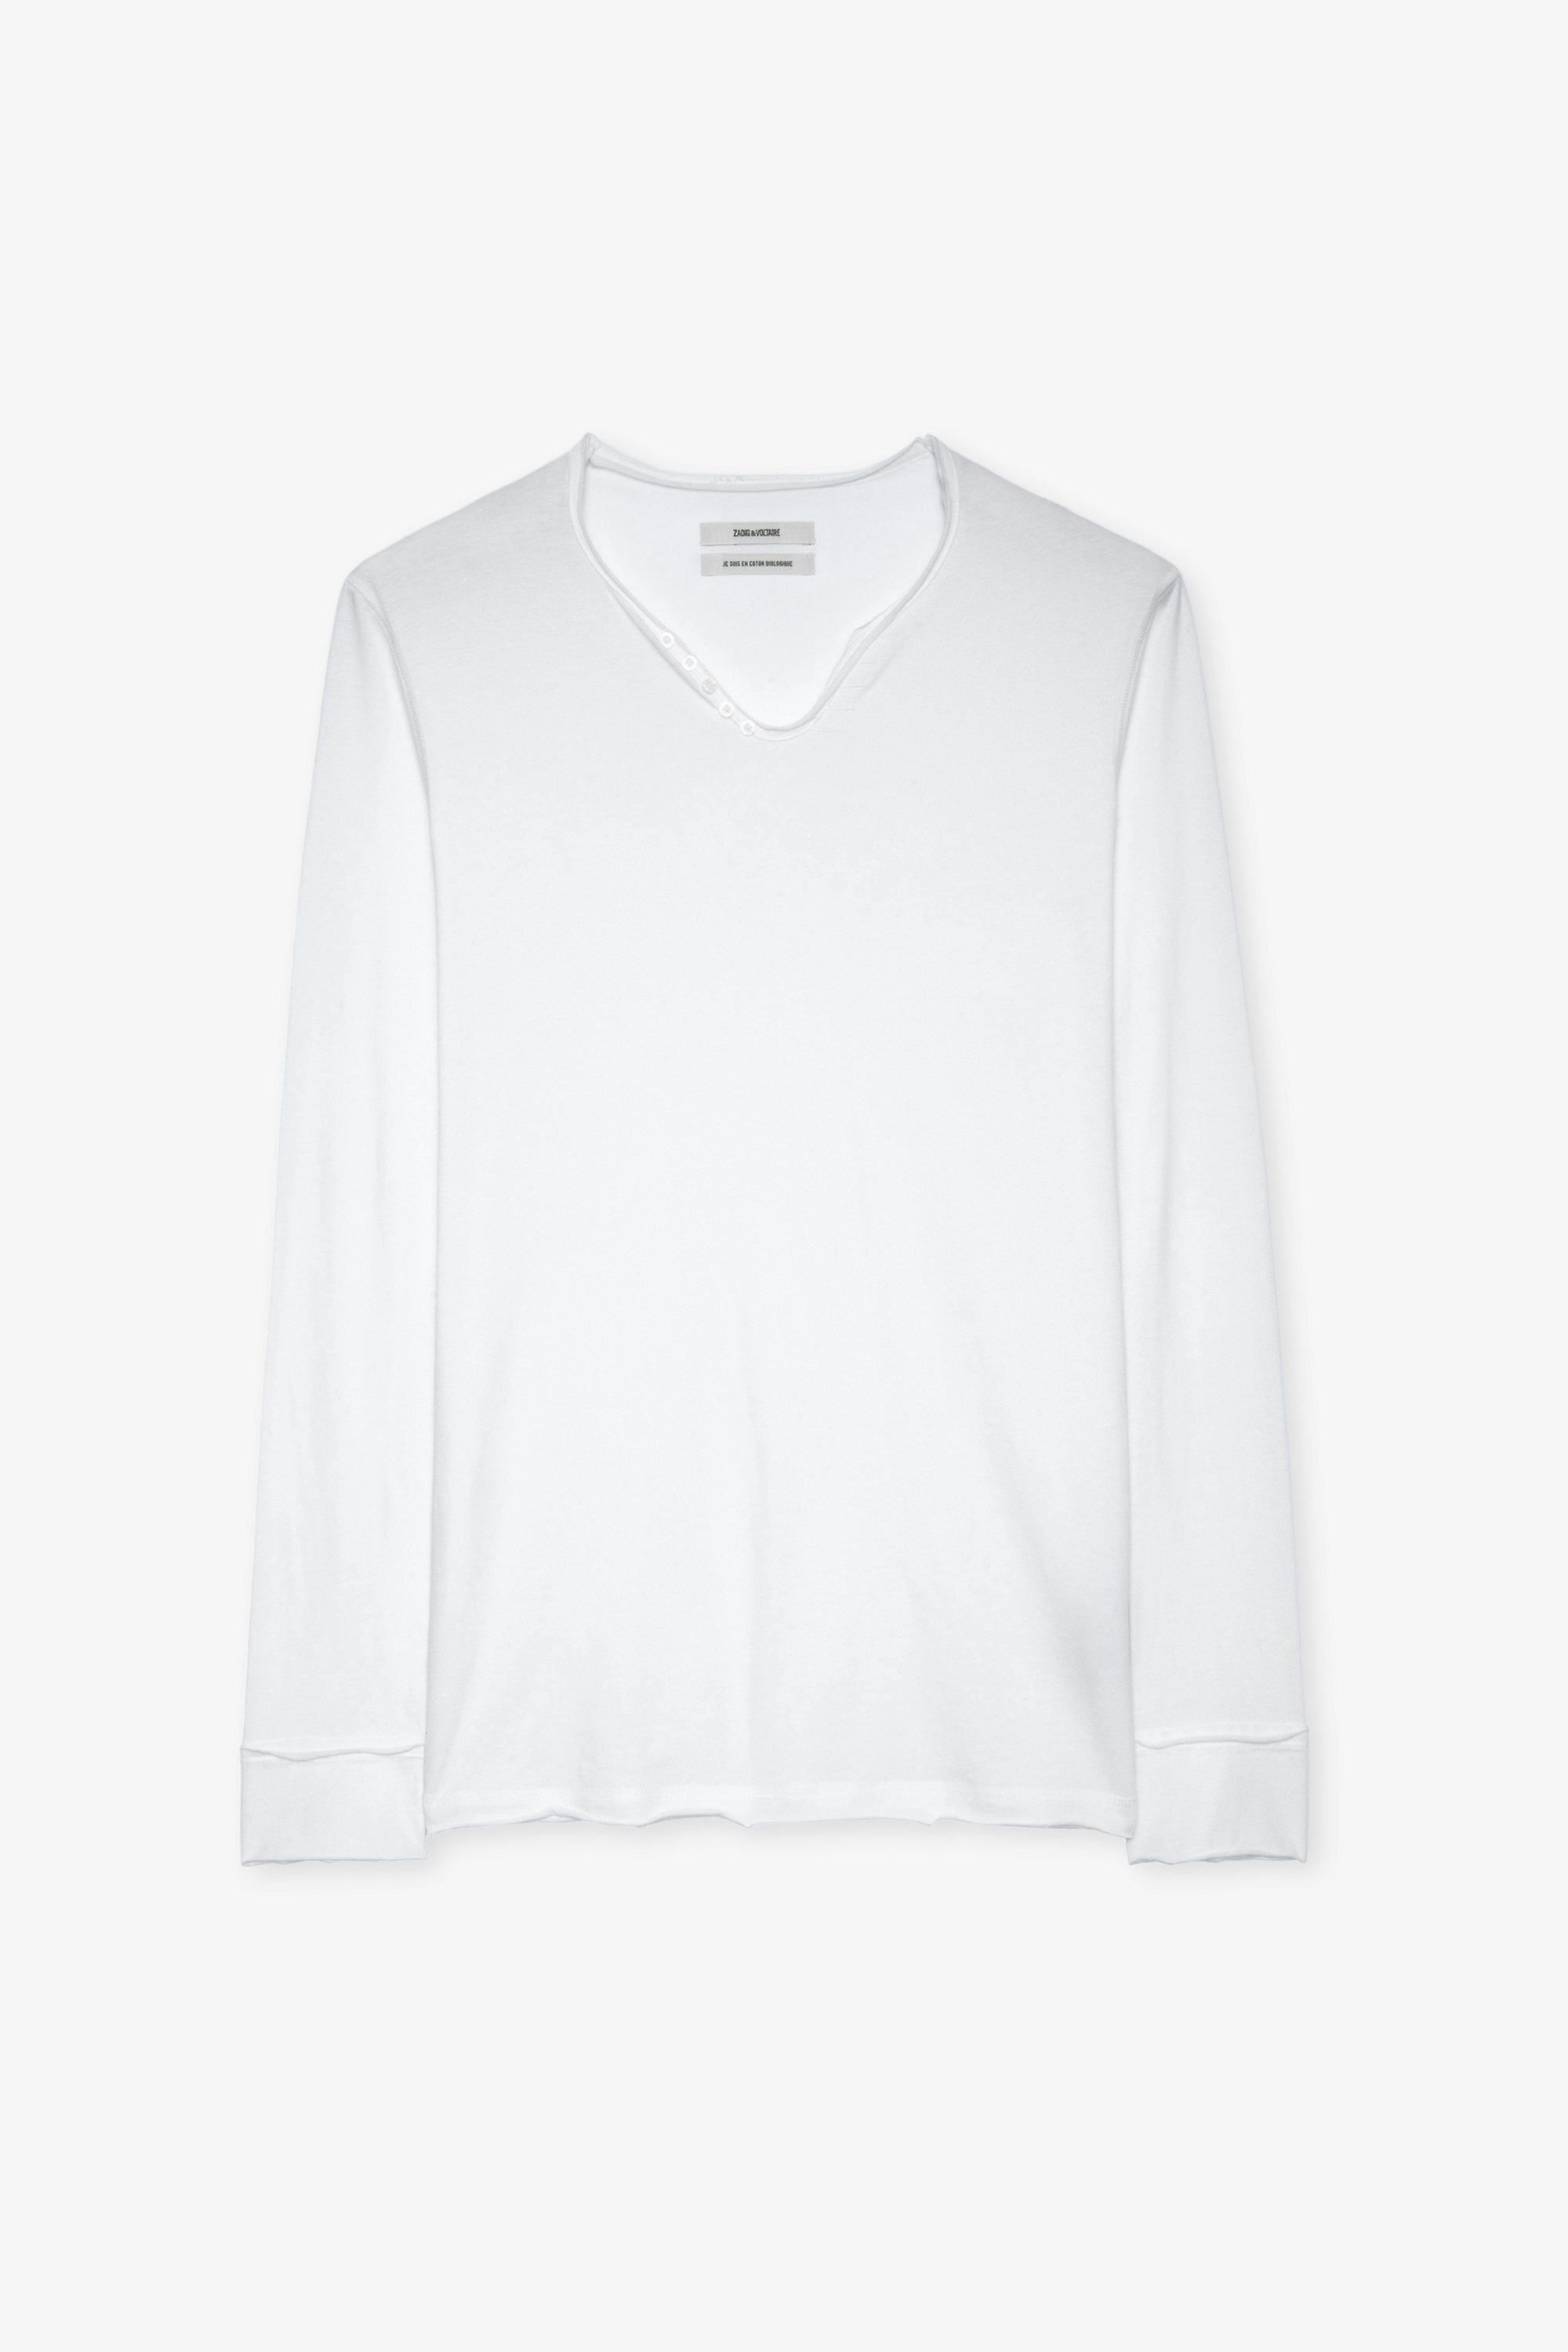 T-shirt Monastir T-shirt bianca in cotone con collo a serafino